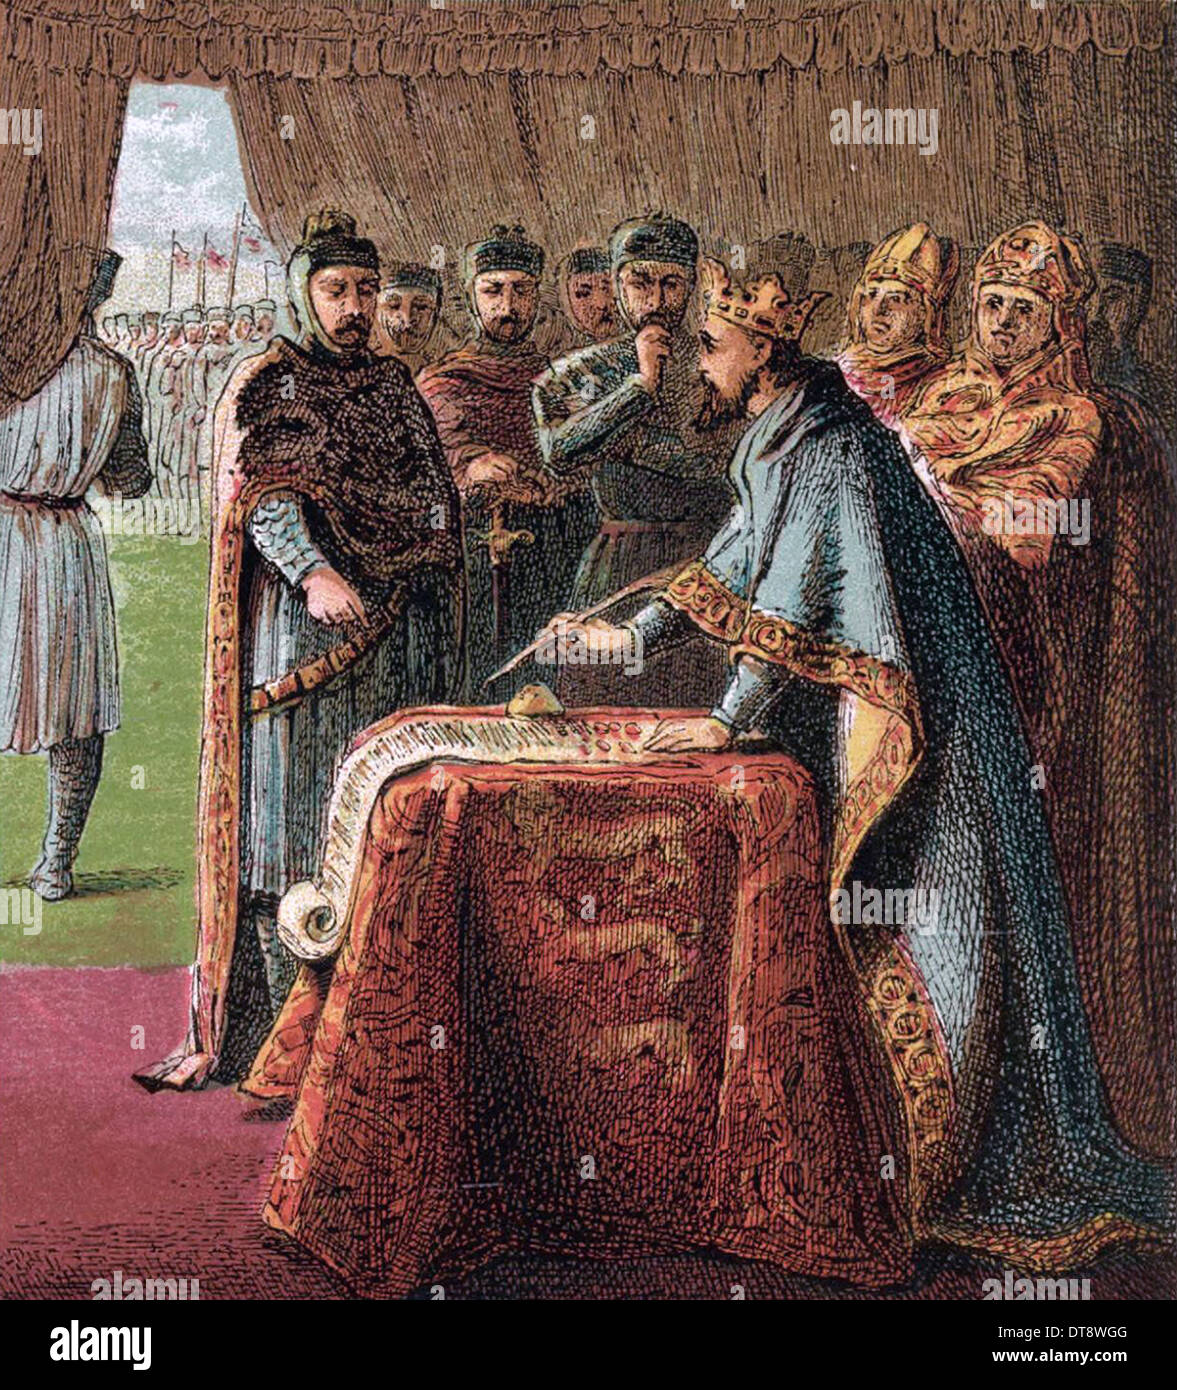 Le roi Jean d'Angleterre signe la Magna Carta (De : Photos de l'histoire anglaise), 1868. Artiste : Kronheim, Joseph Martin (1810-1896) Banque D'Images